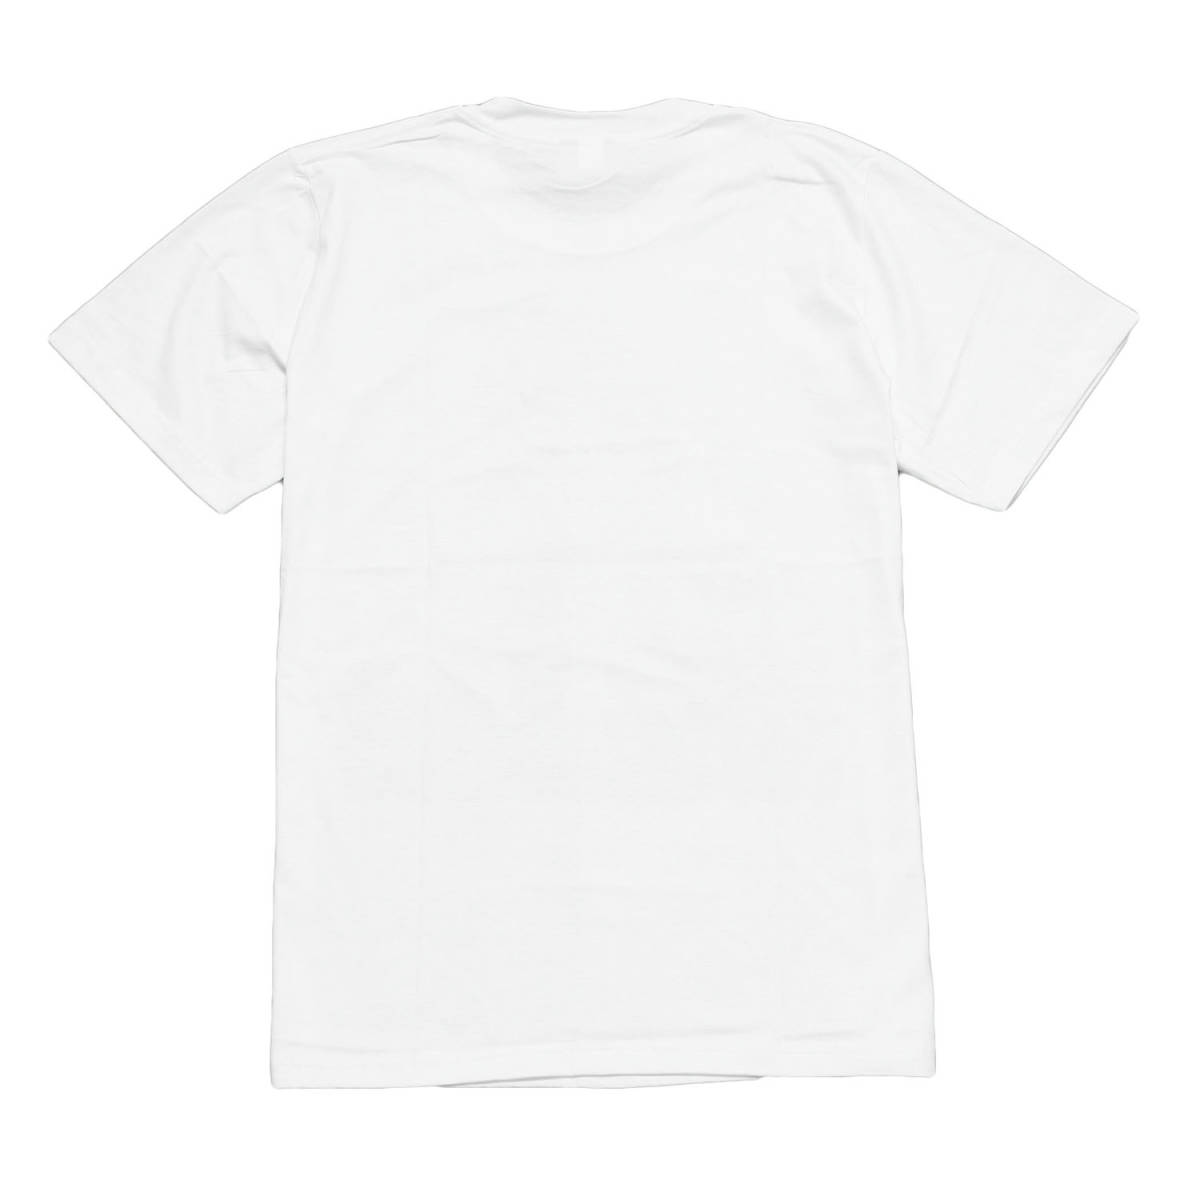 パルプフィクション 映画 ミア アメコミ ヒロイン ストリート系 デザインTシャツ おもしろTシャツ メンズ 半袖 ★tsr0488-wht-lの画像3